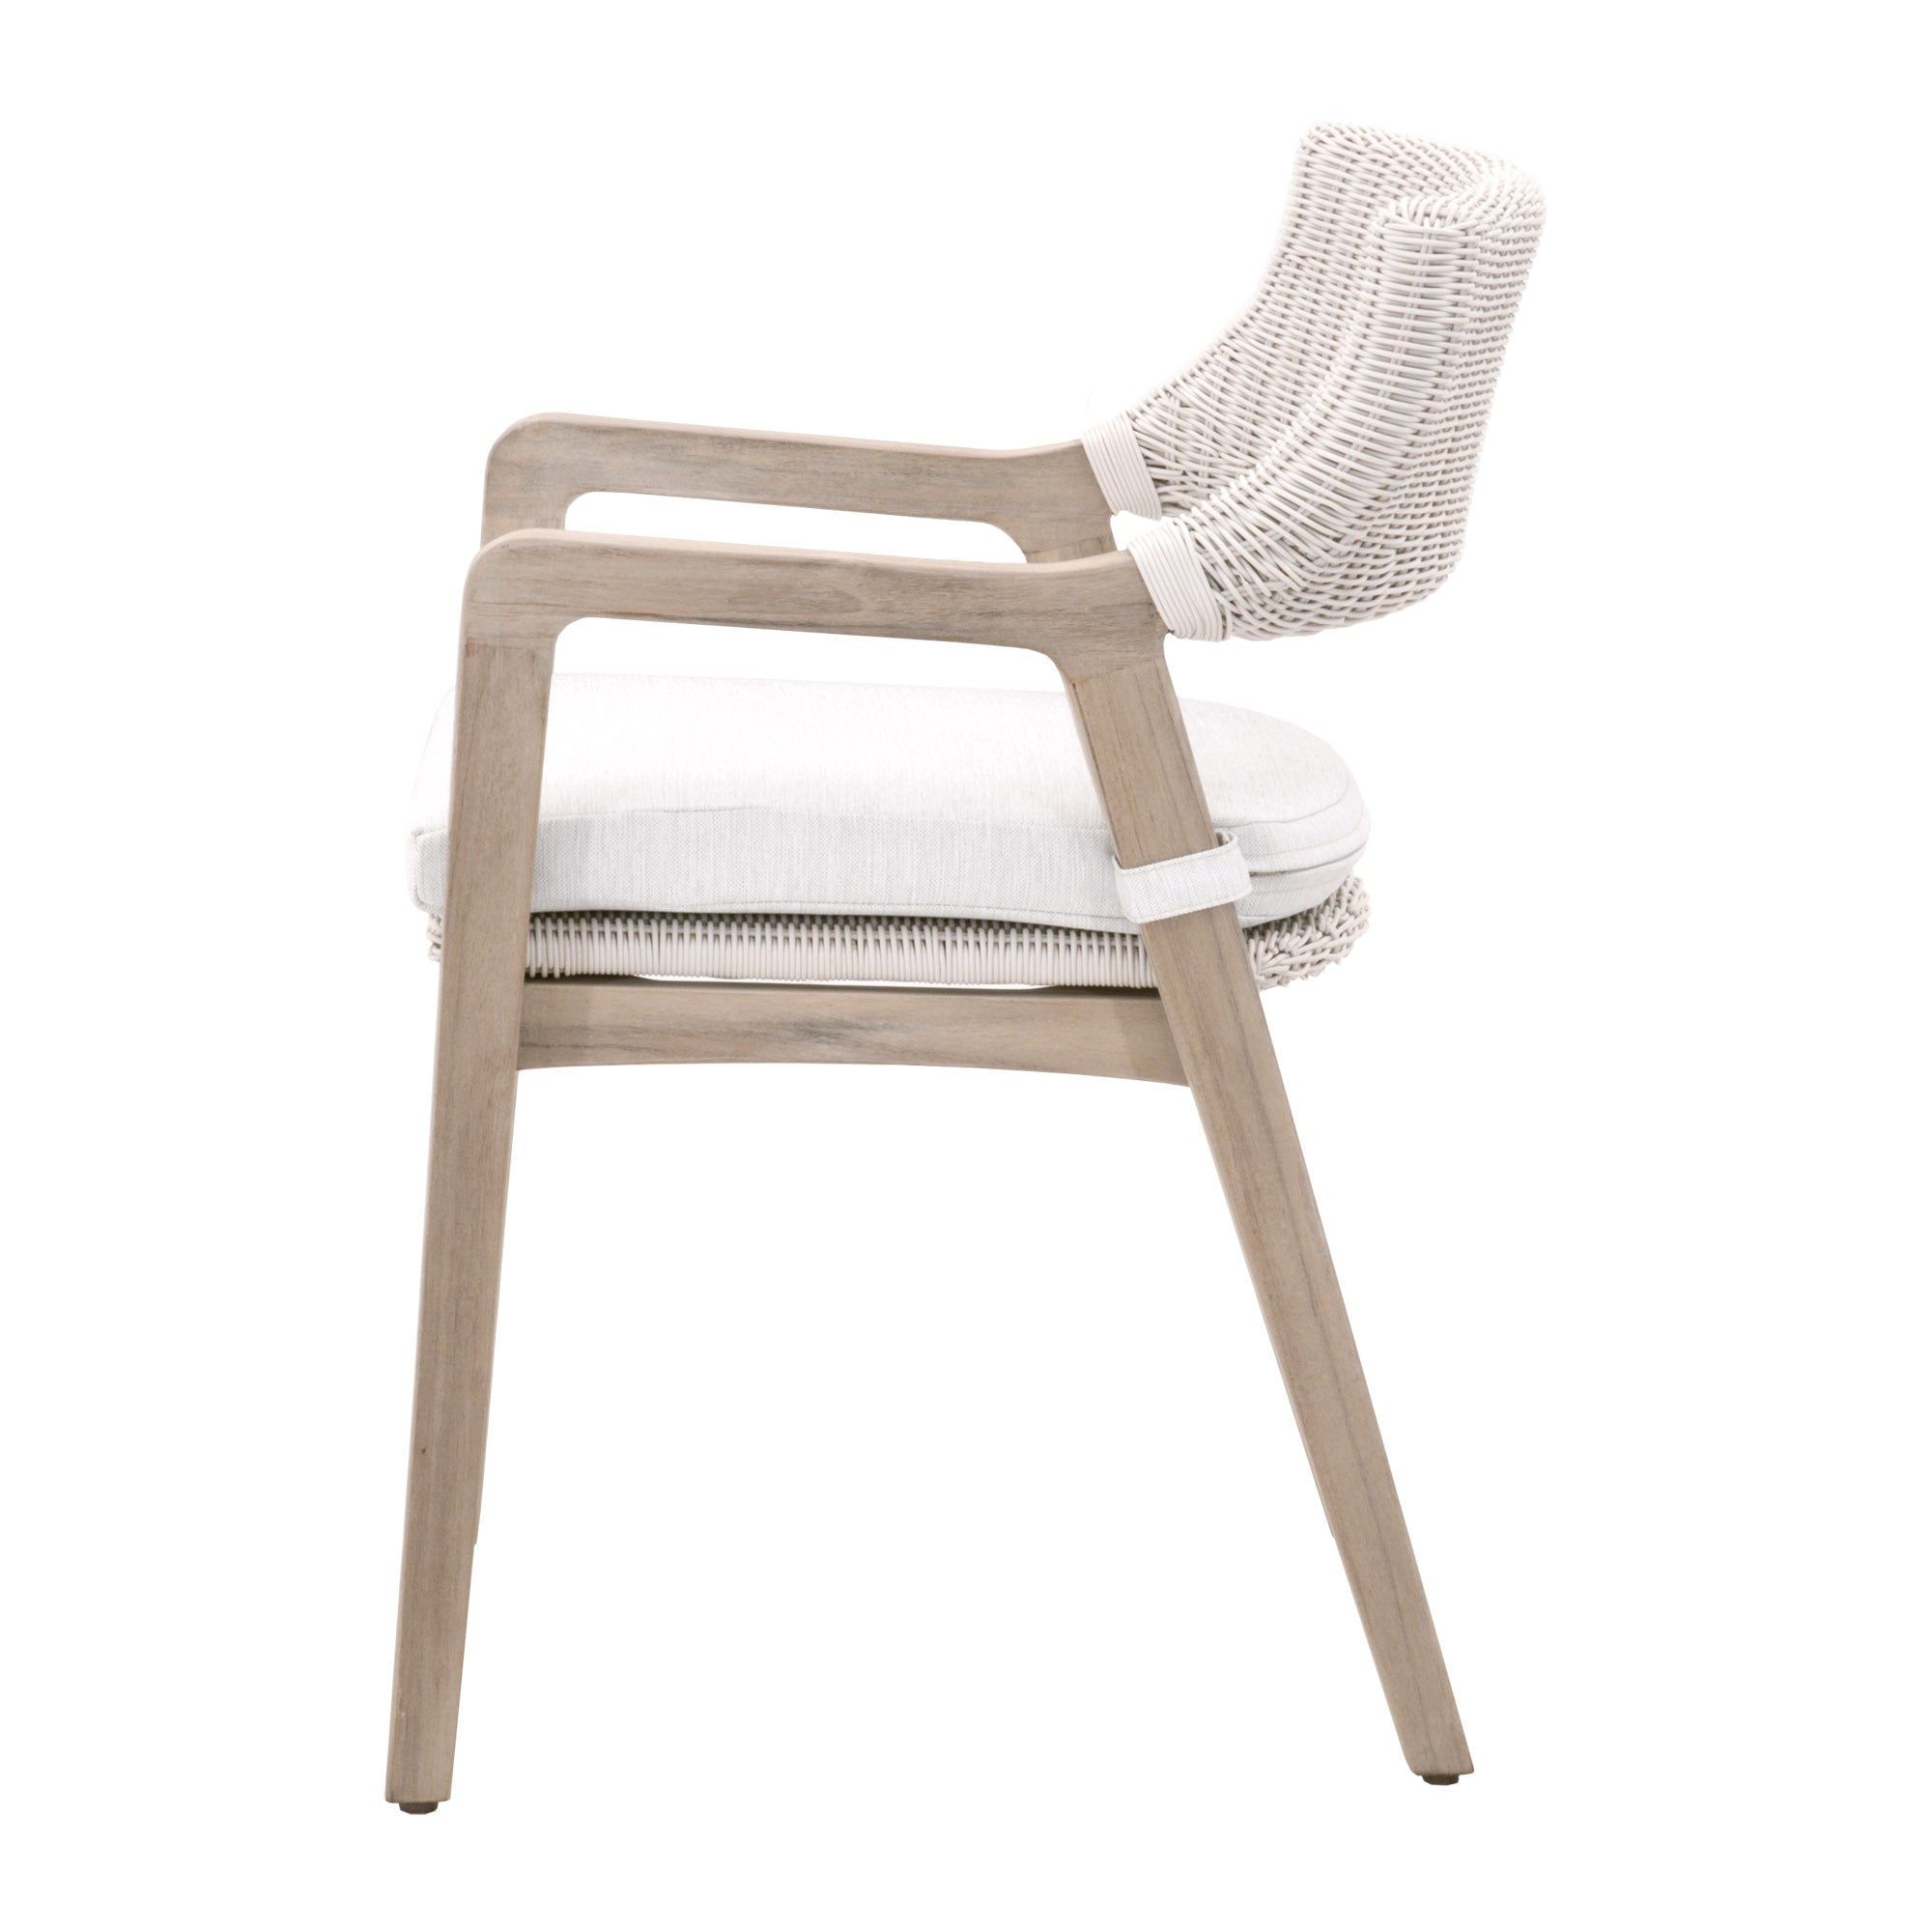 Lucia Arm Chair - White